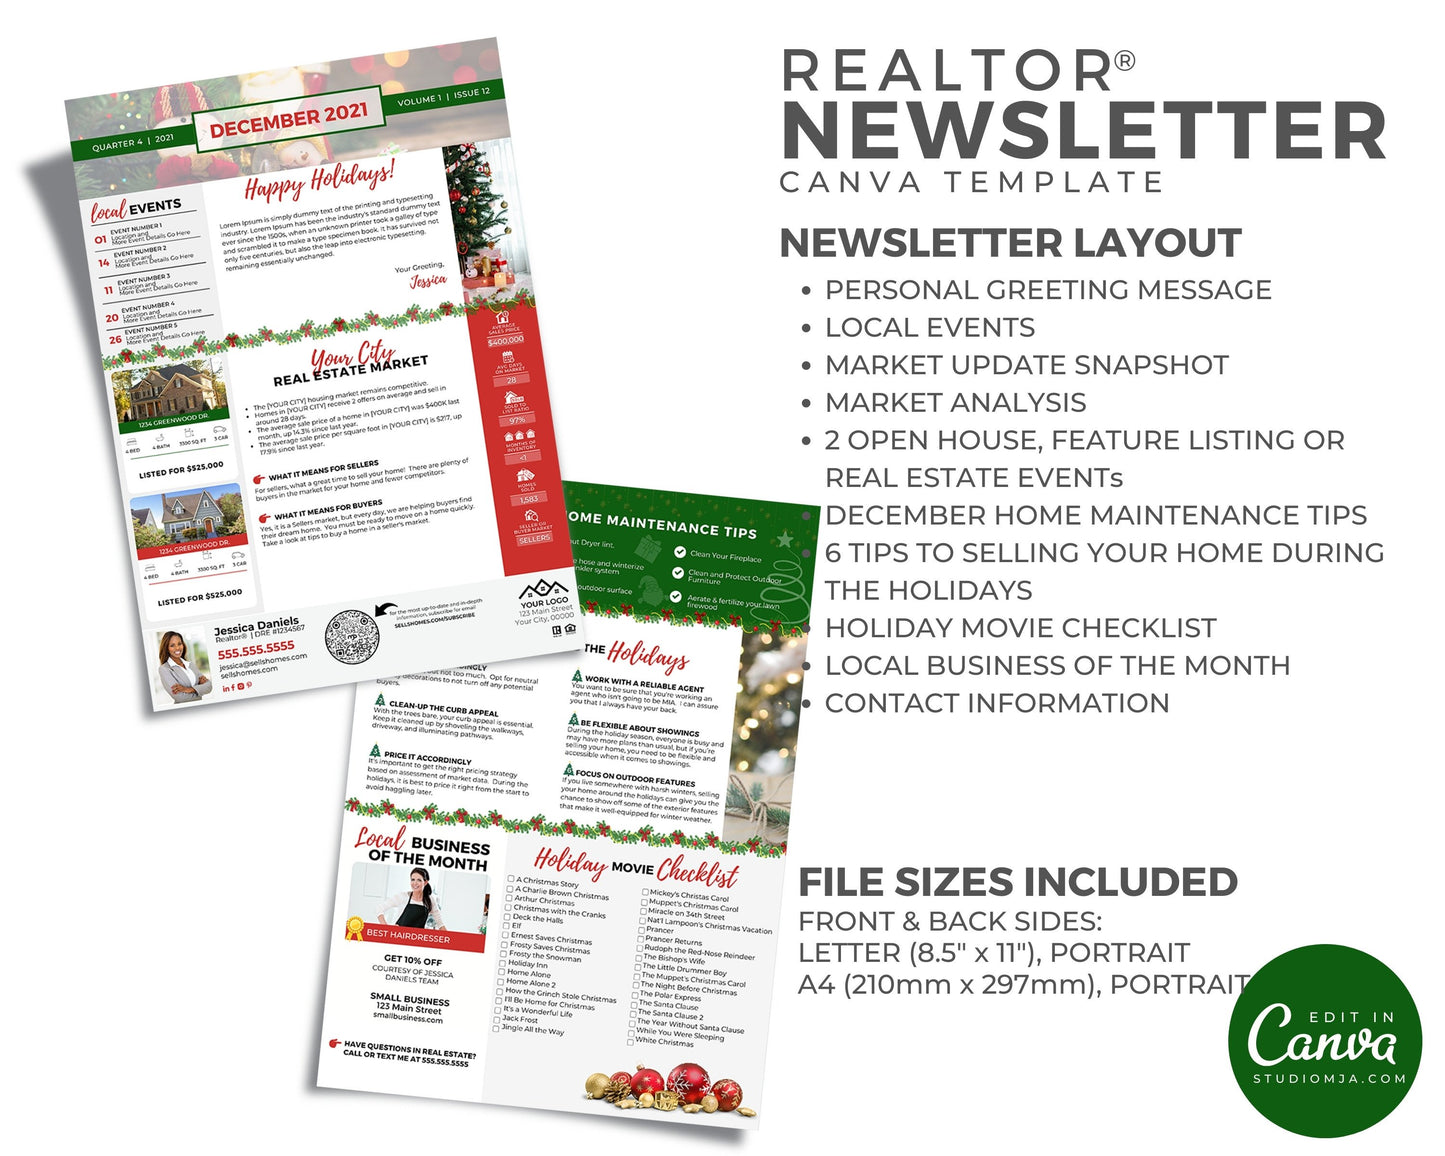 Realtor Newsletter Template - December